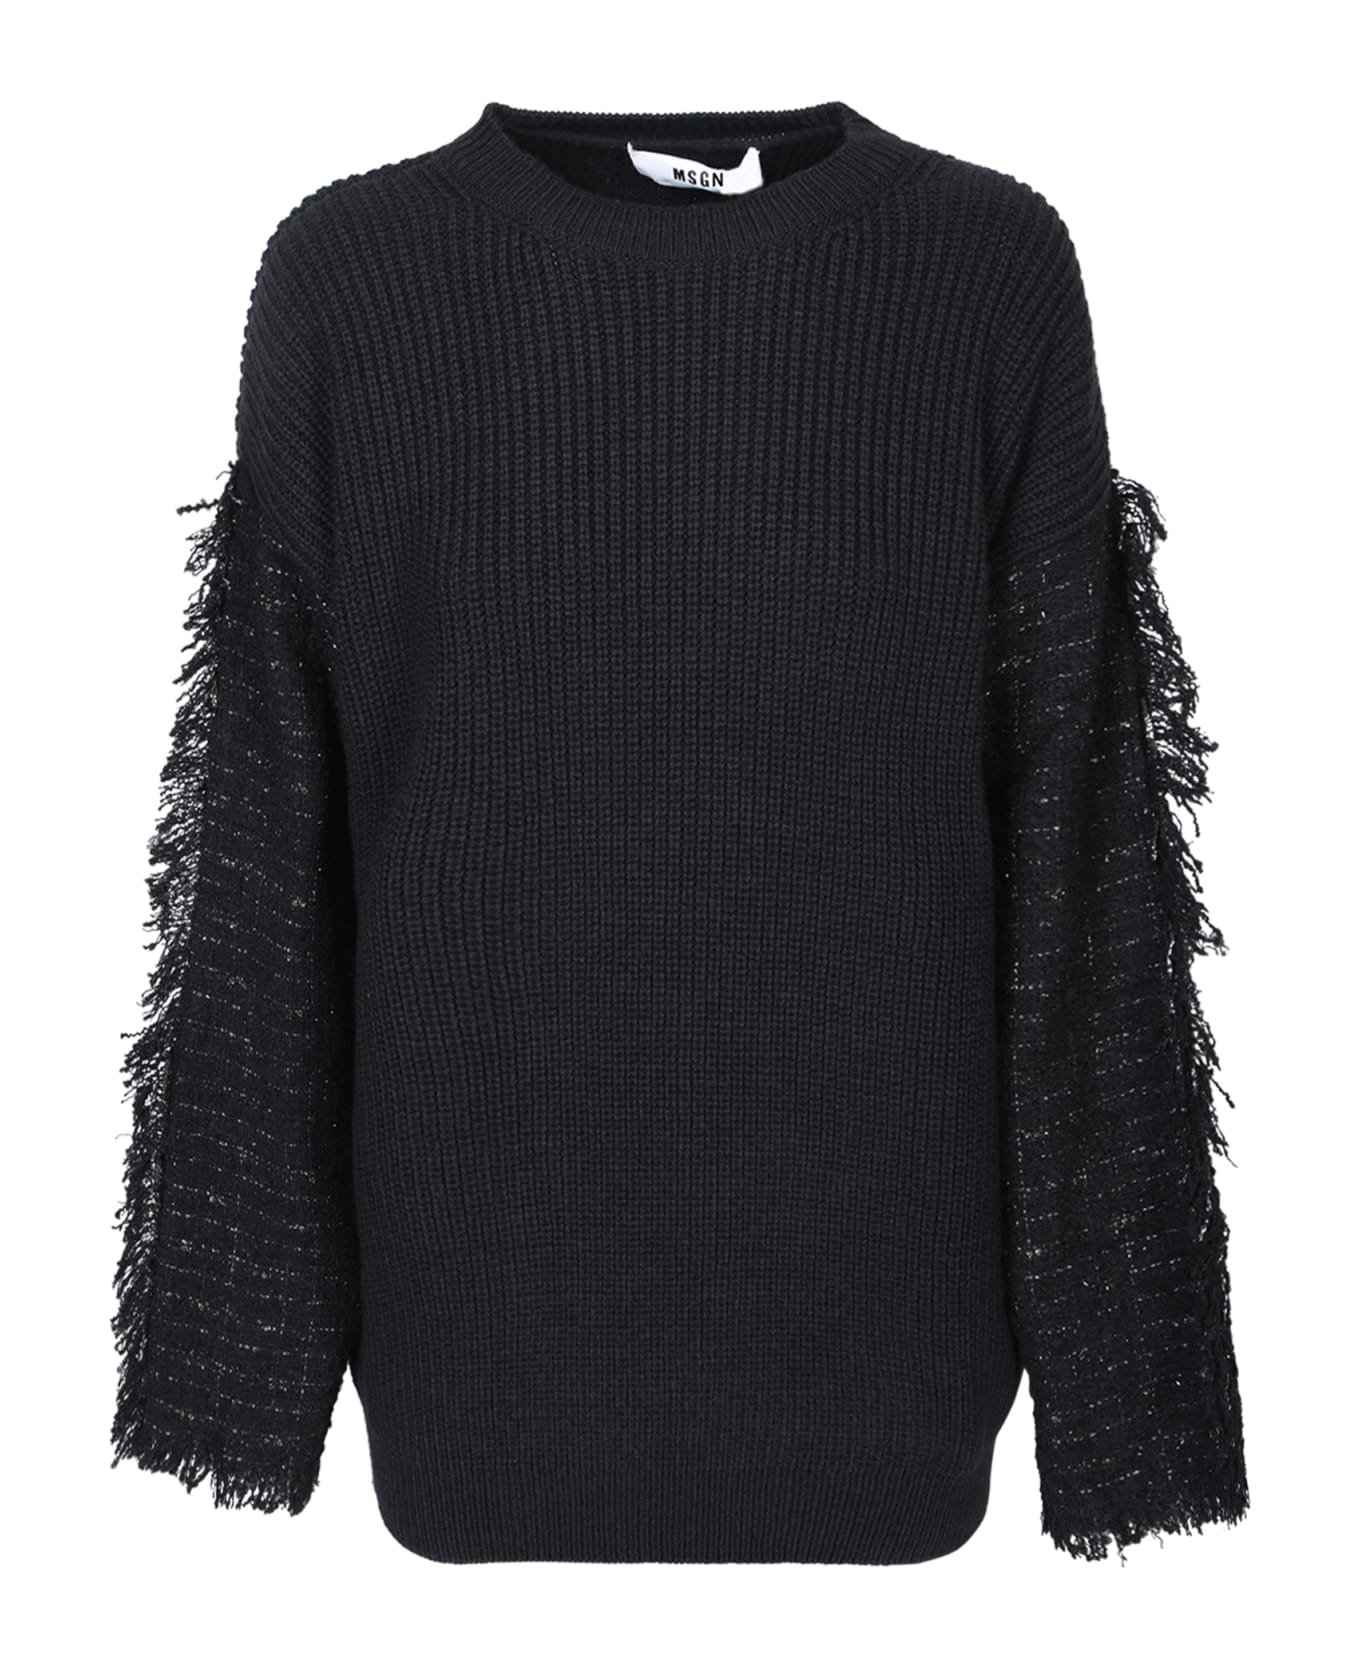 MSGM Fringes Details Black Sweater - Black